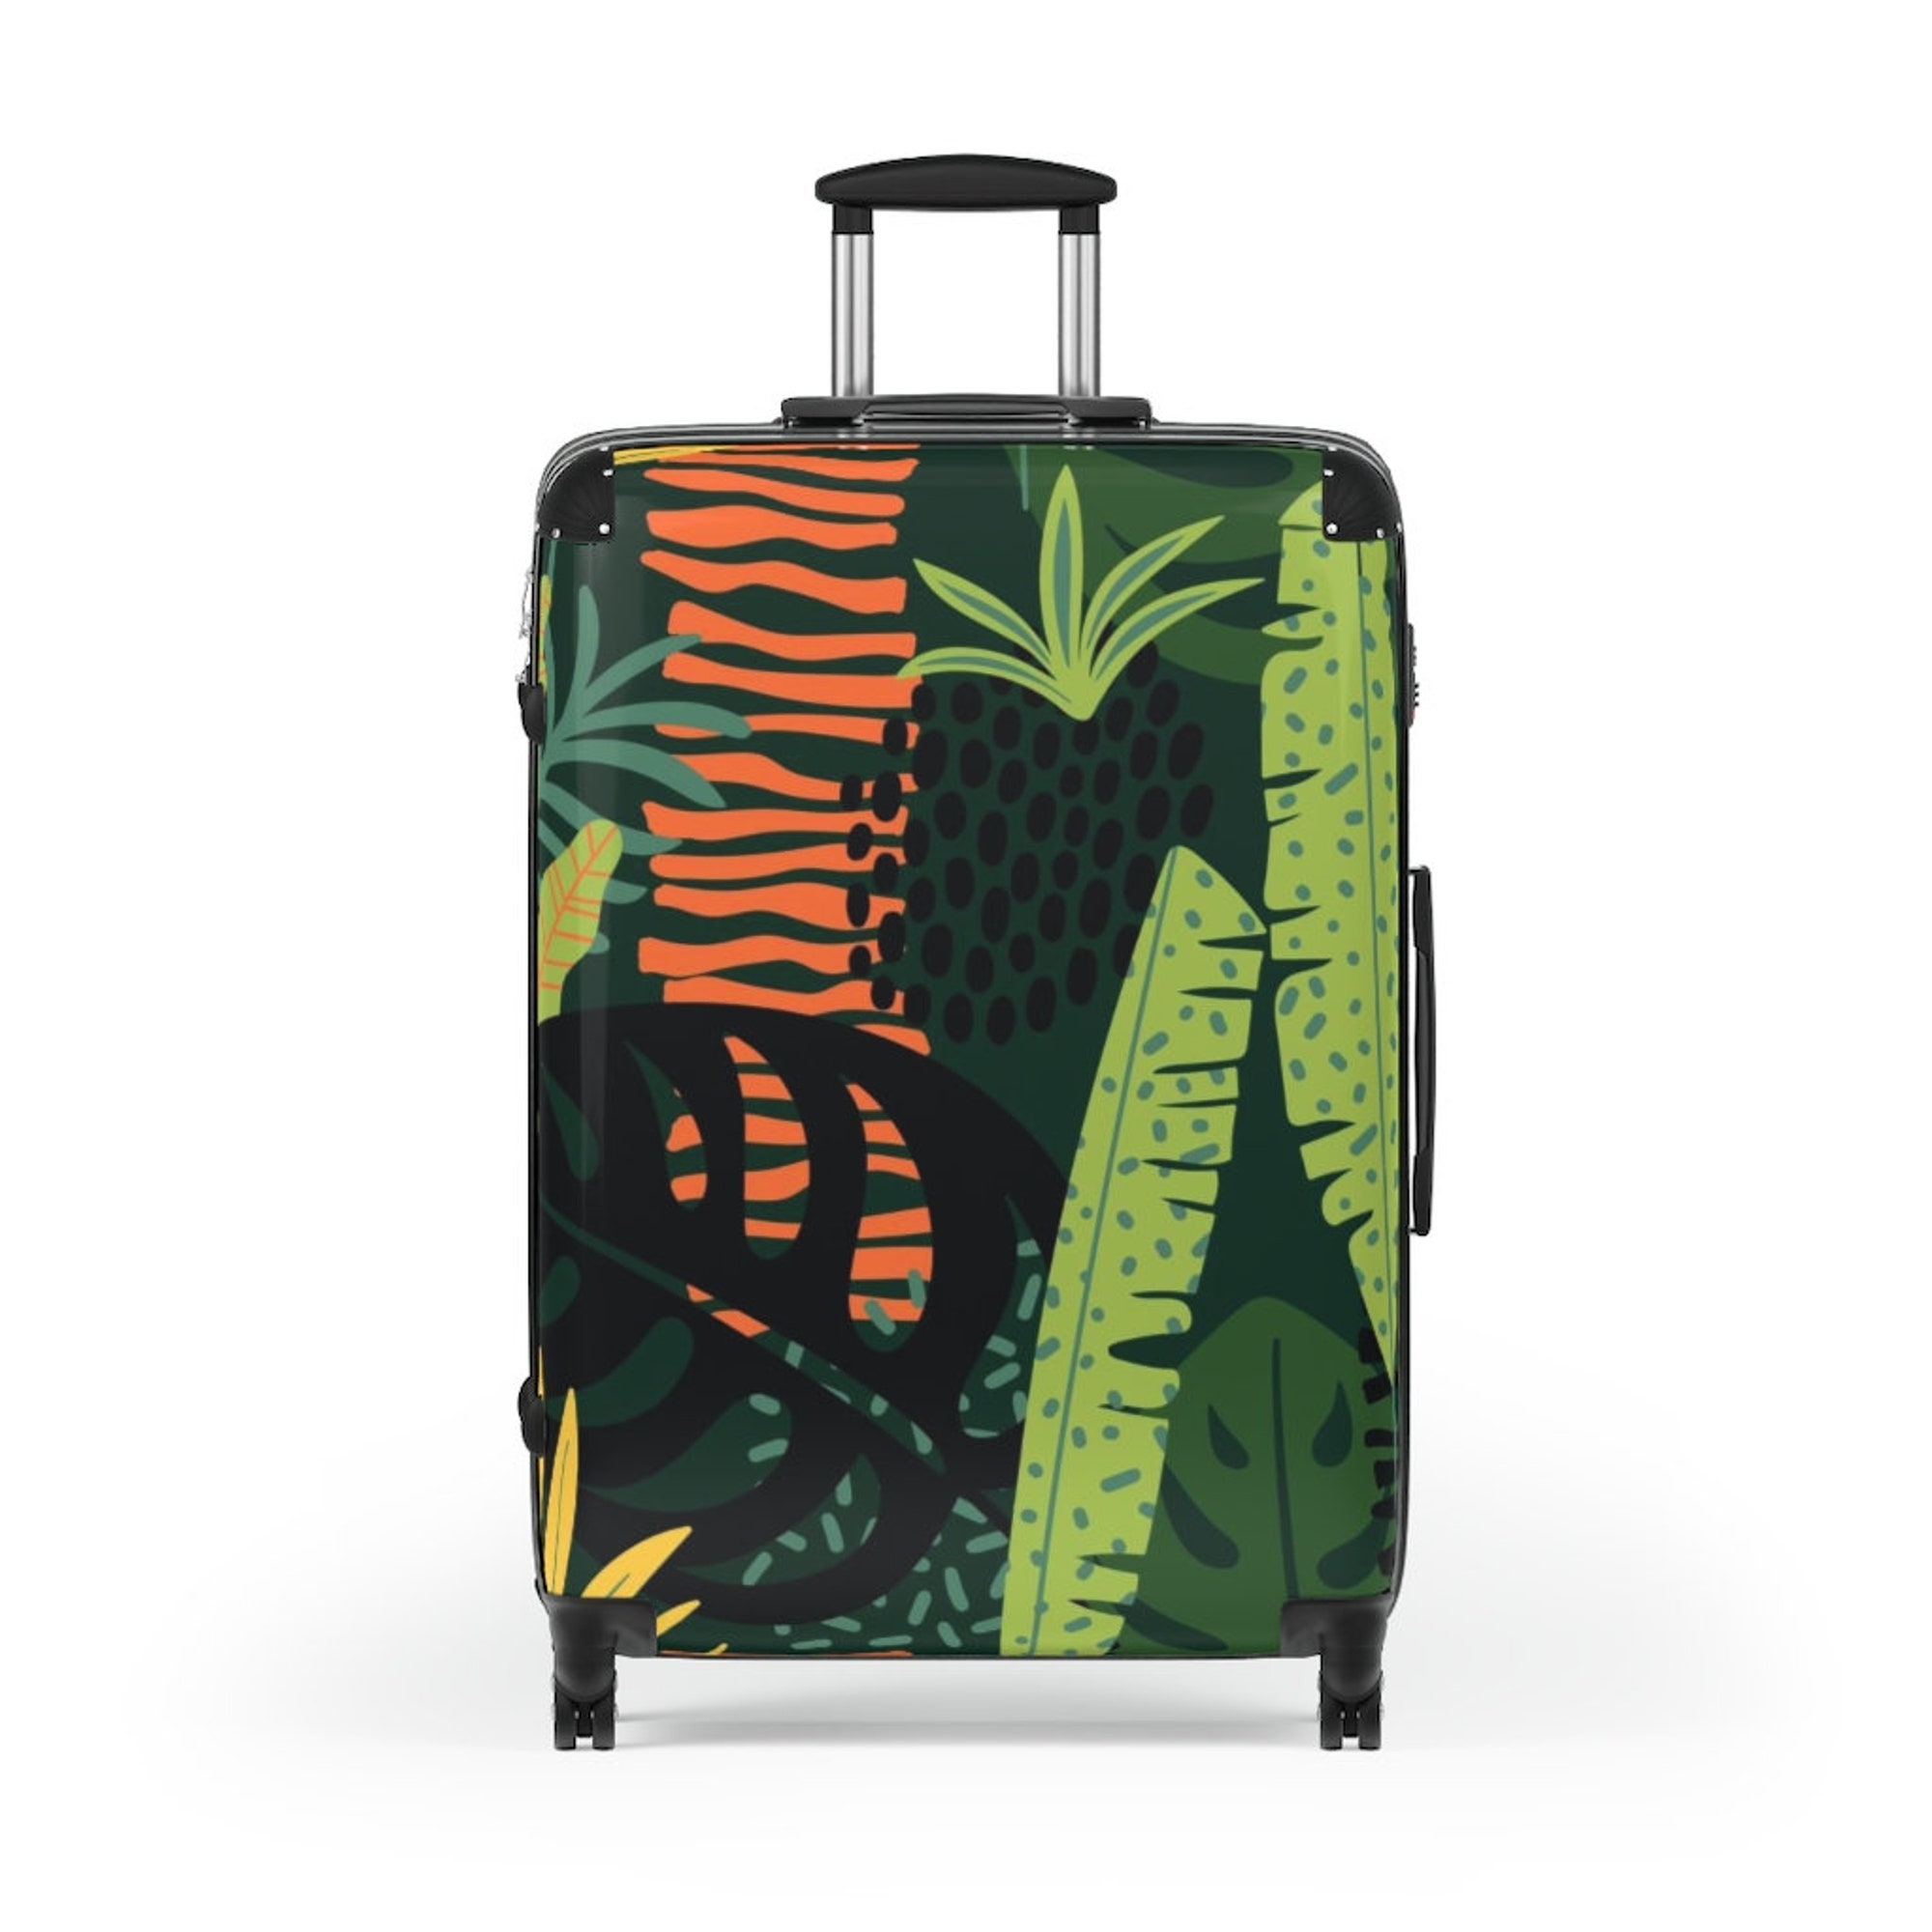 Discover The Moriko Suitcase